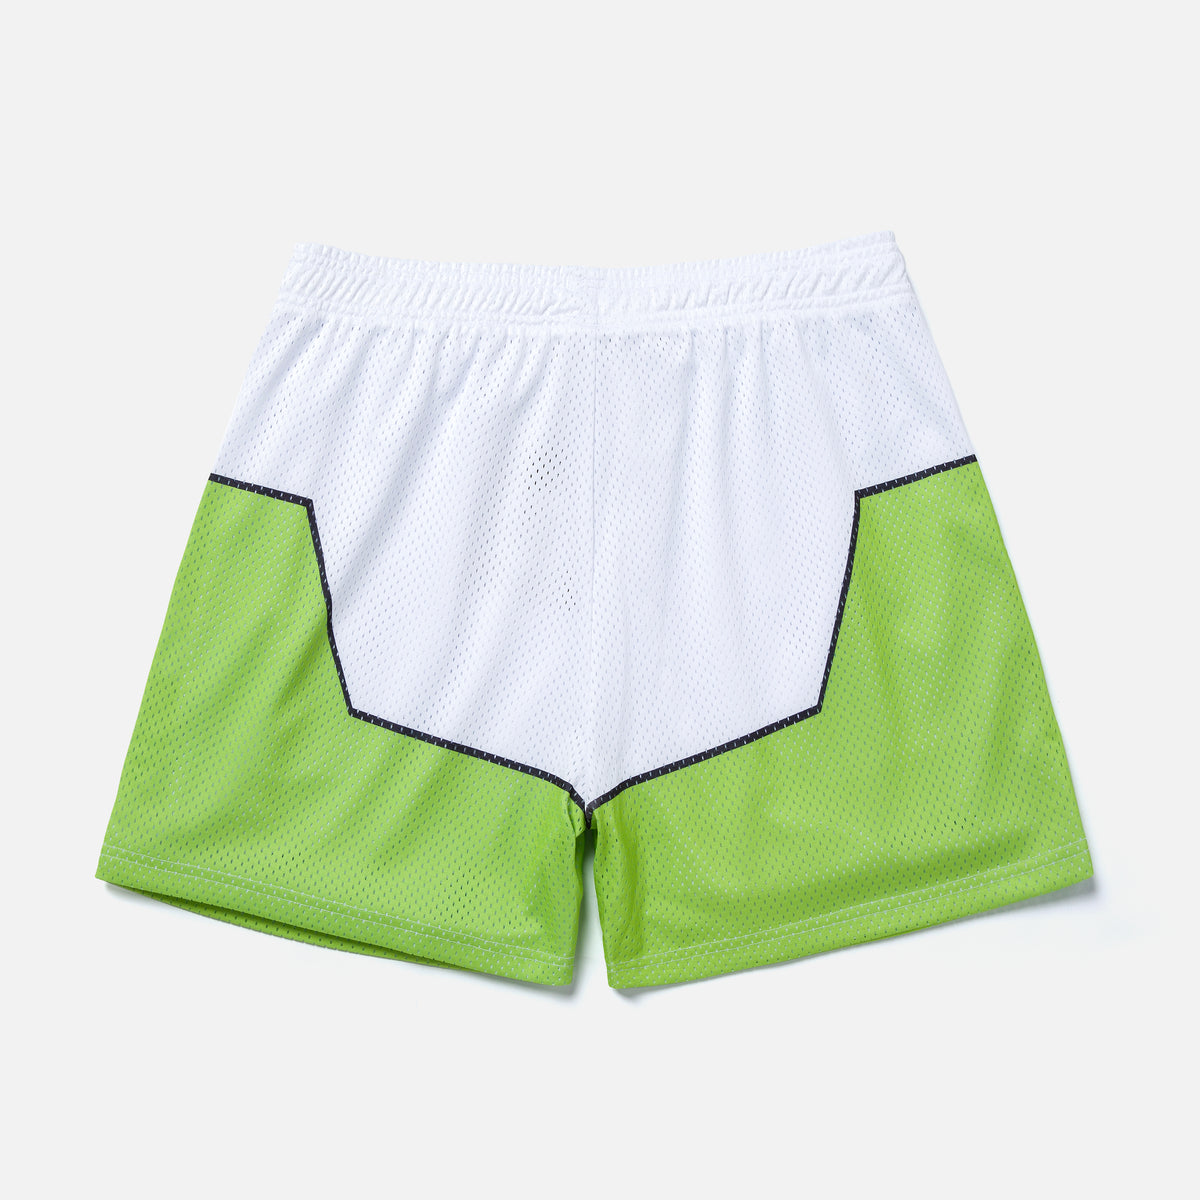 Kids Ocean Shorts – OVERTIME